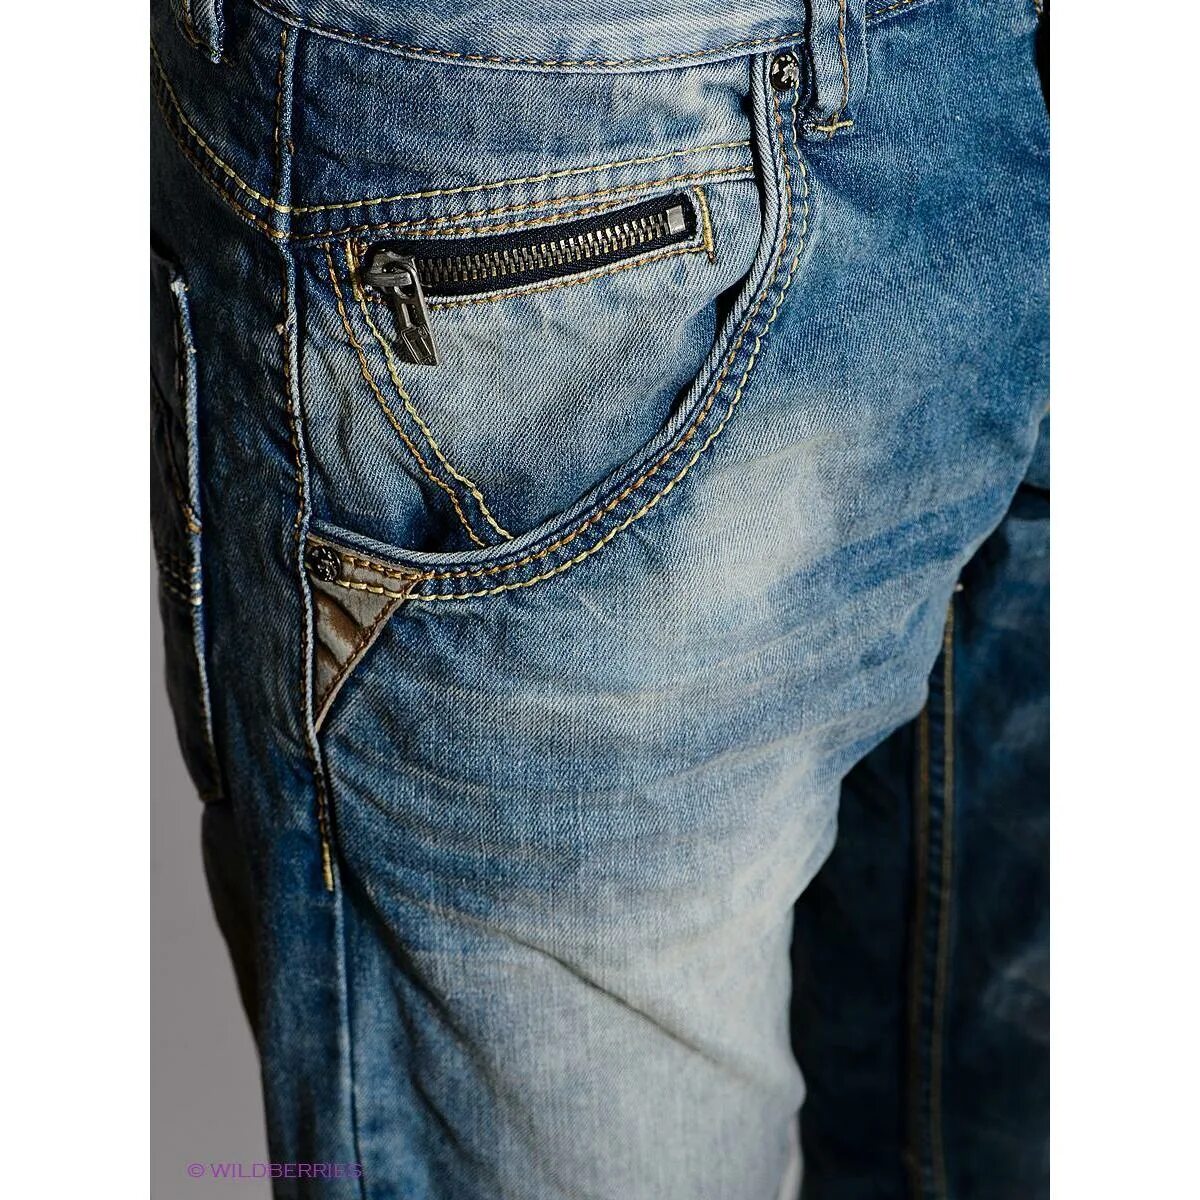 Джинсы мужские больших размеров купить в москве. Итальянские джинсы мужские. Джинсы timezone мужские. Тайм зона джинсы мужские. Фирмы джинс мужских.